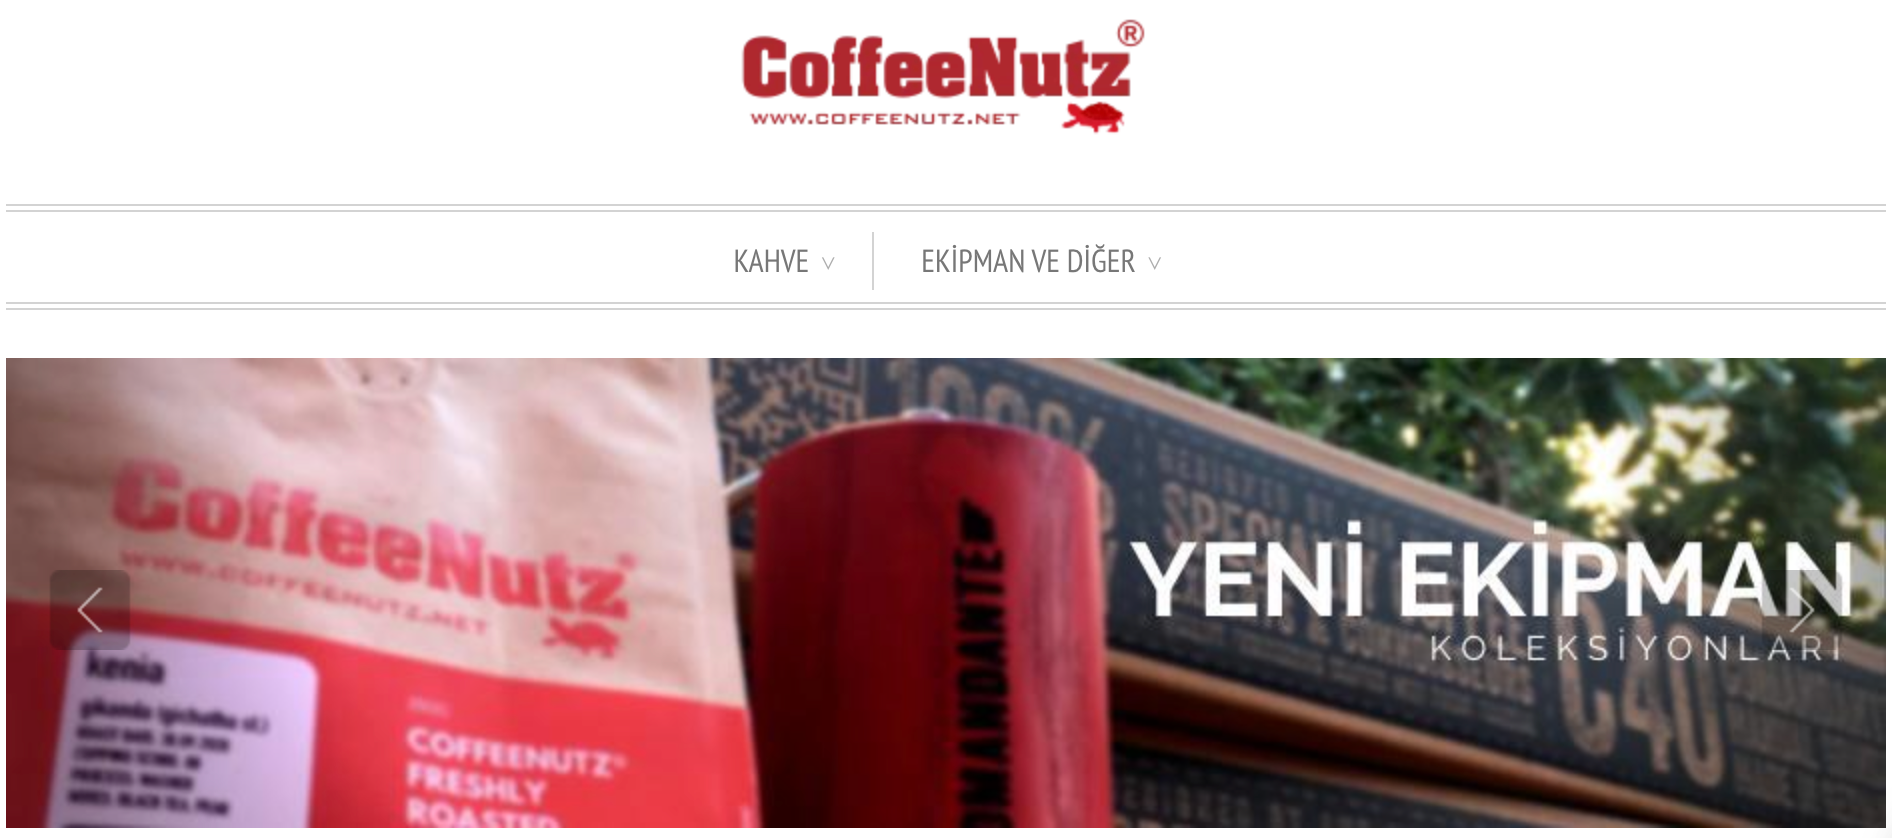 www.coffeenutz.net